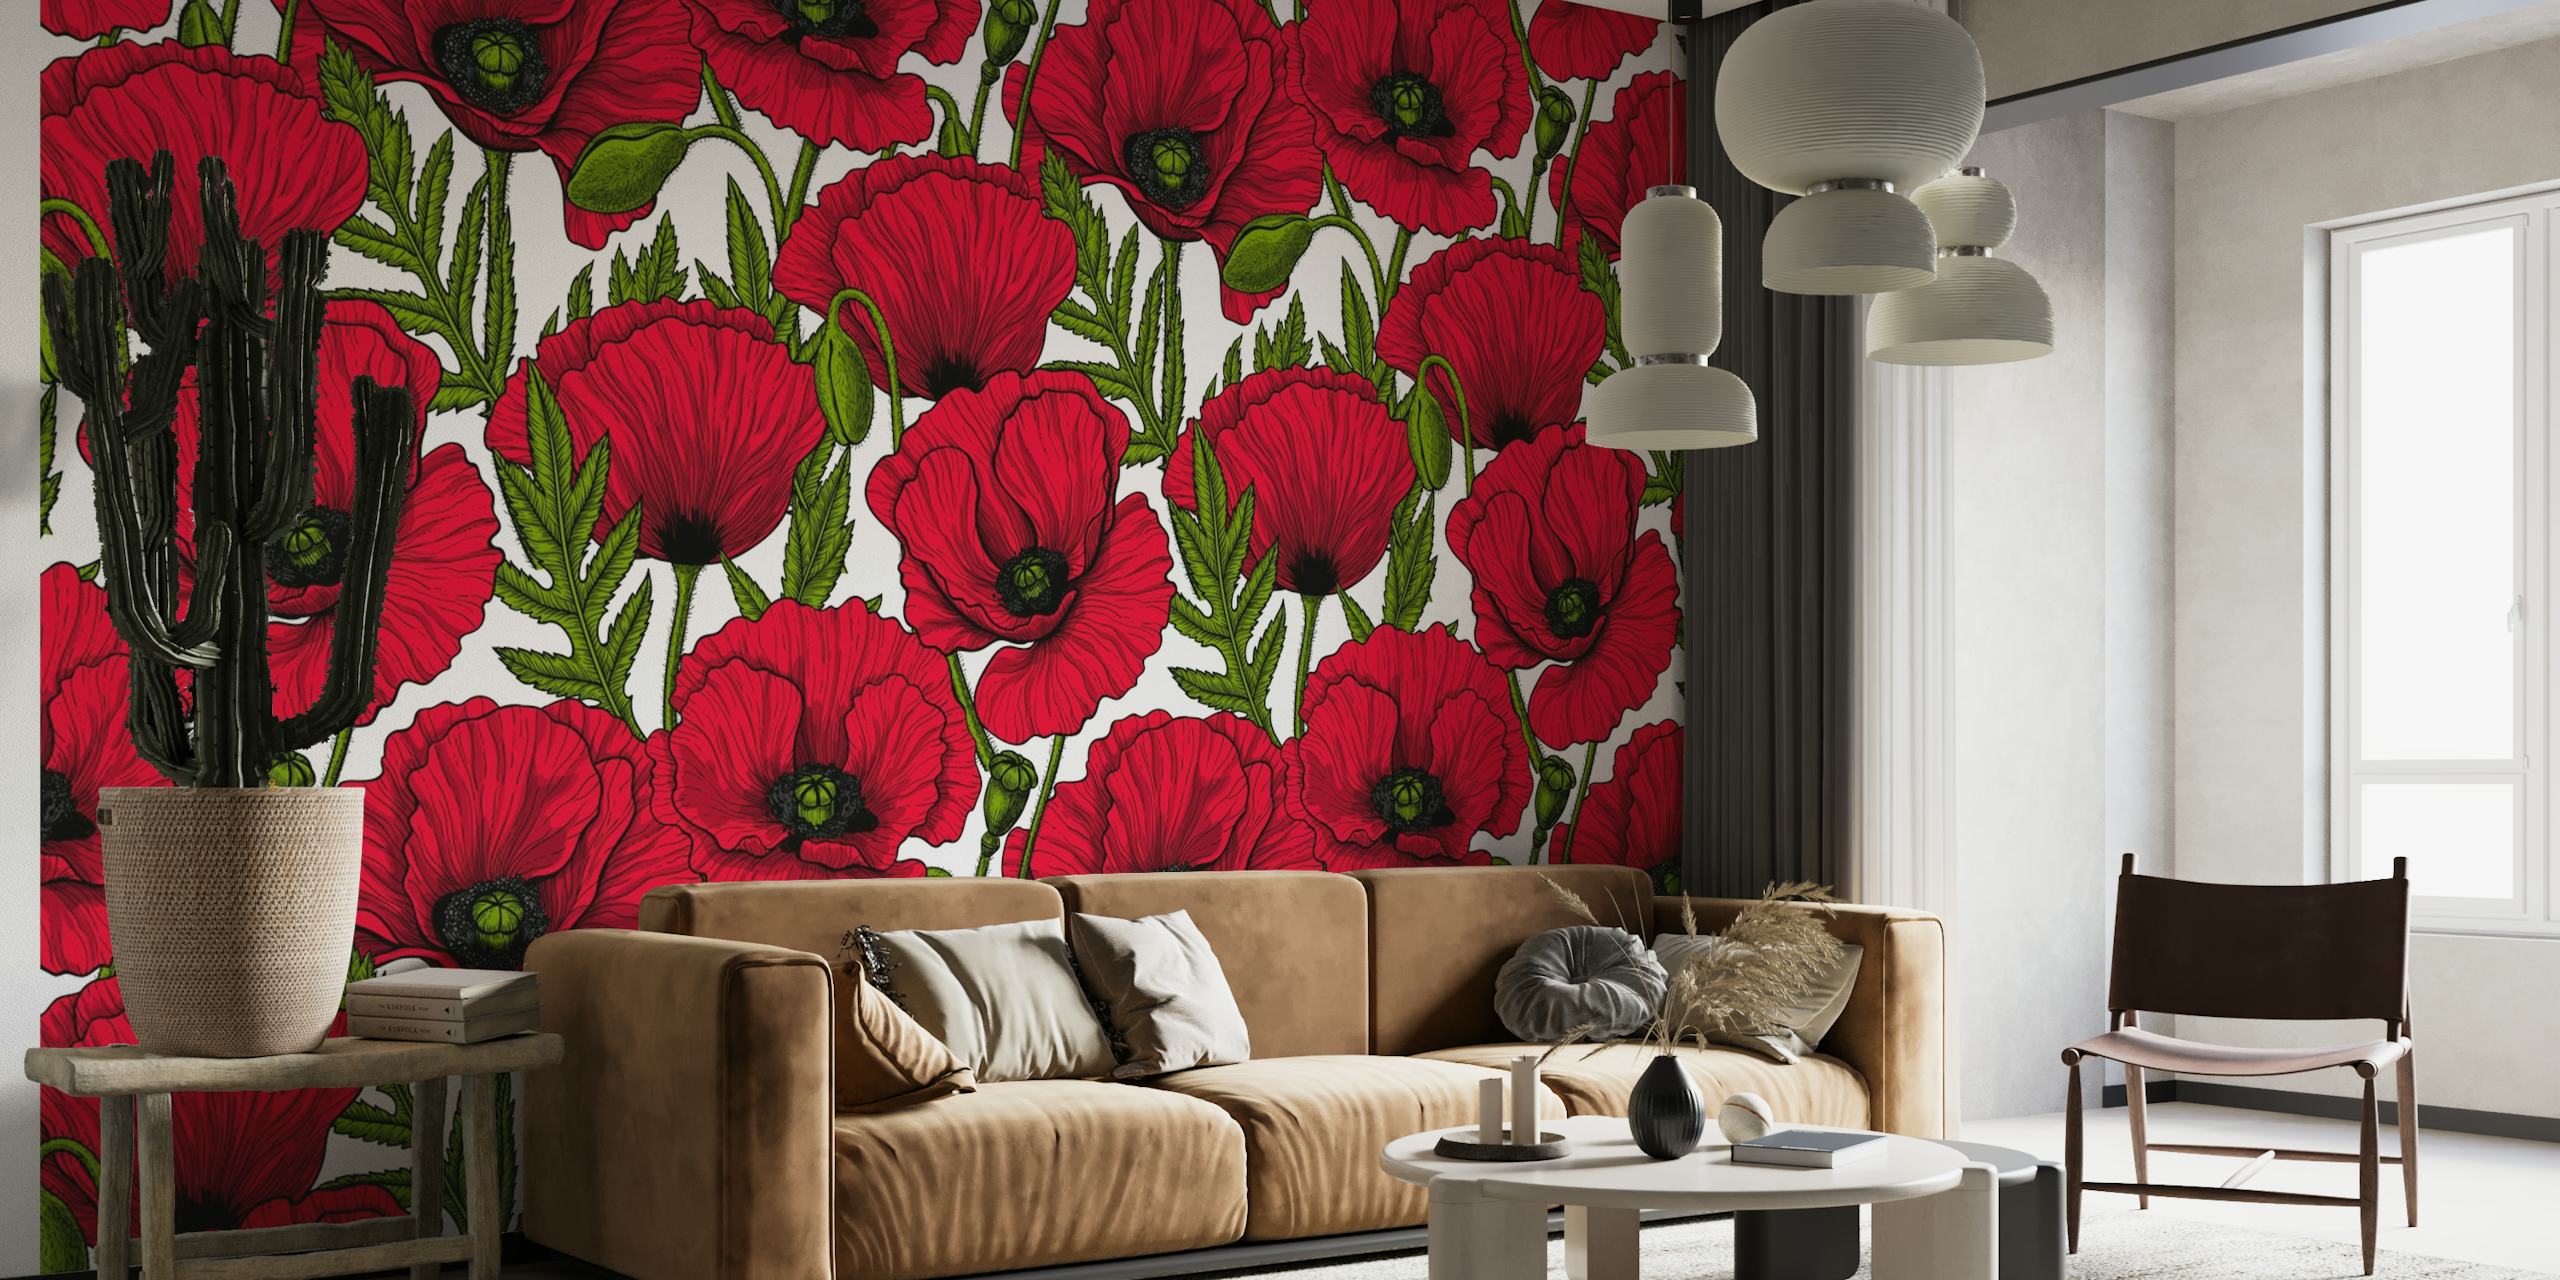 Red Poppy garden 3 wallpaper